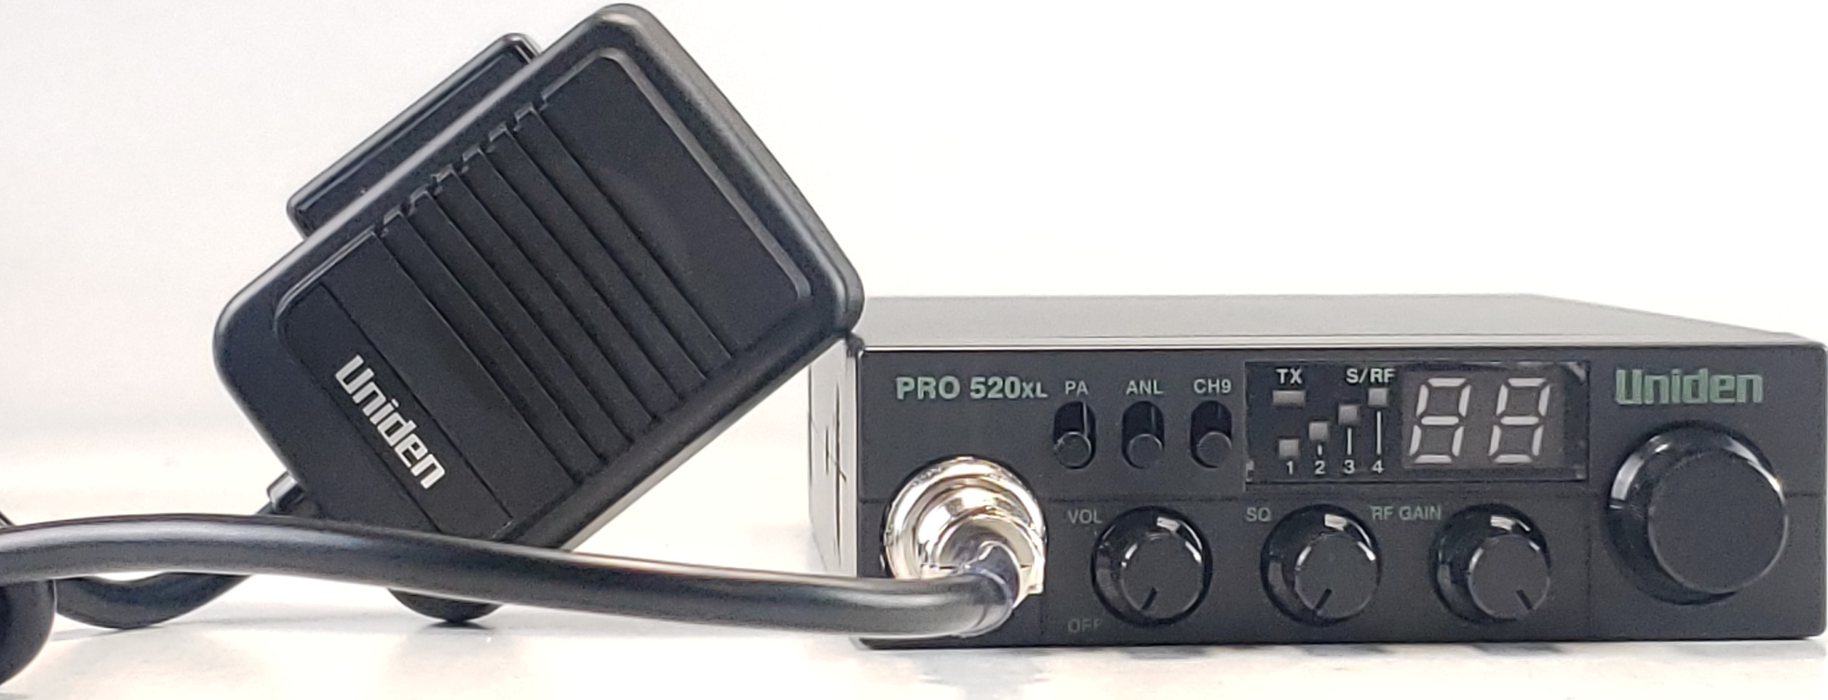 Uniden PRO520XL Compact Mobile CB Radio — Uniden America Corporation